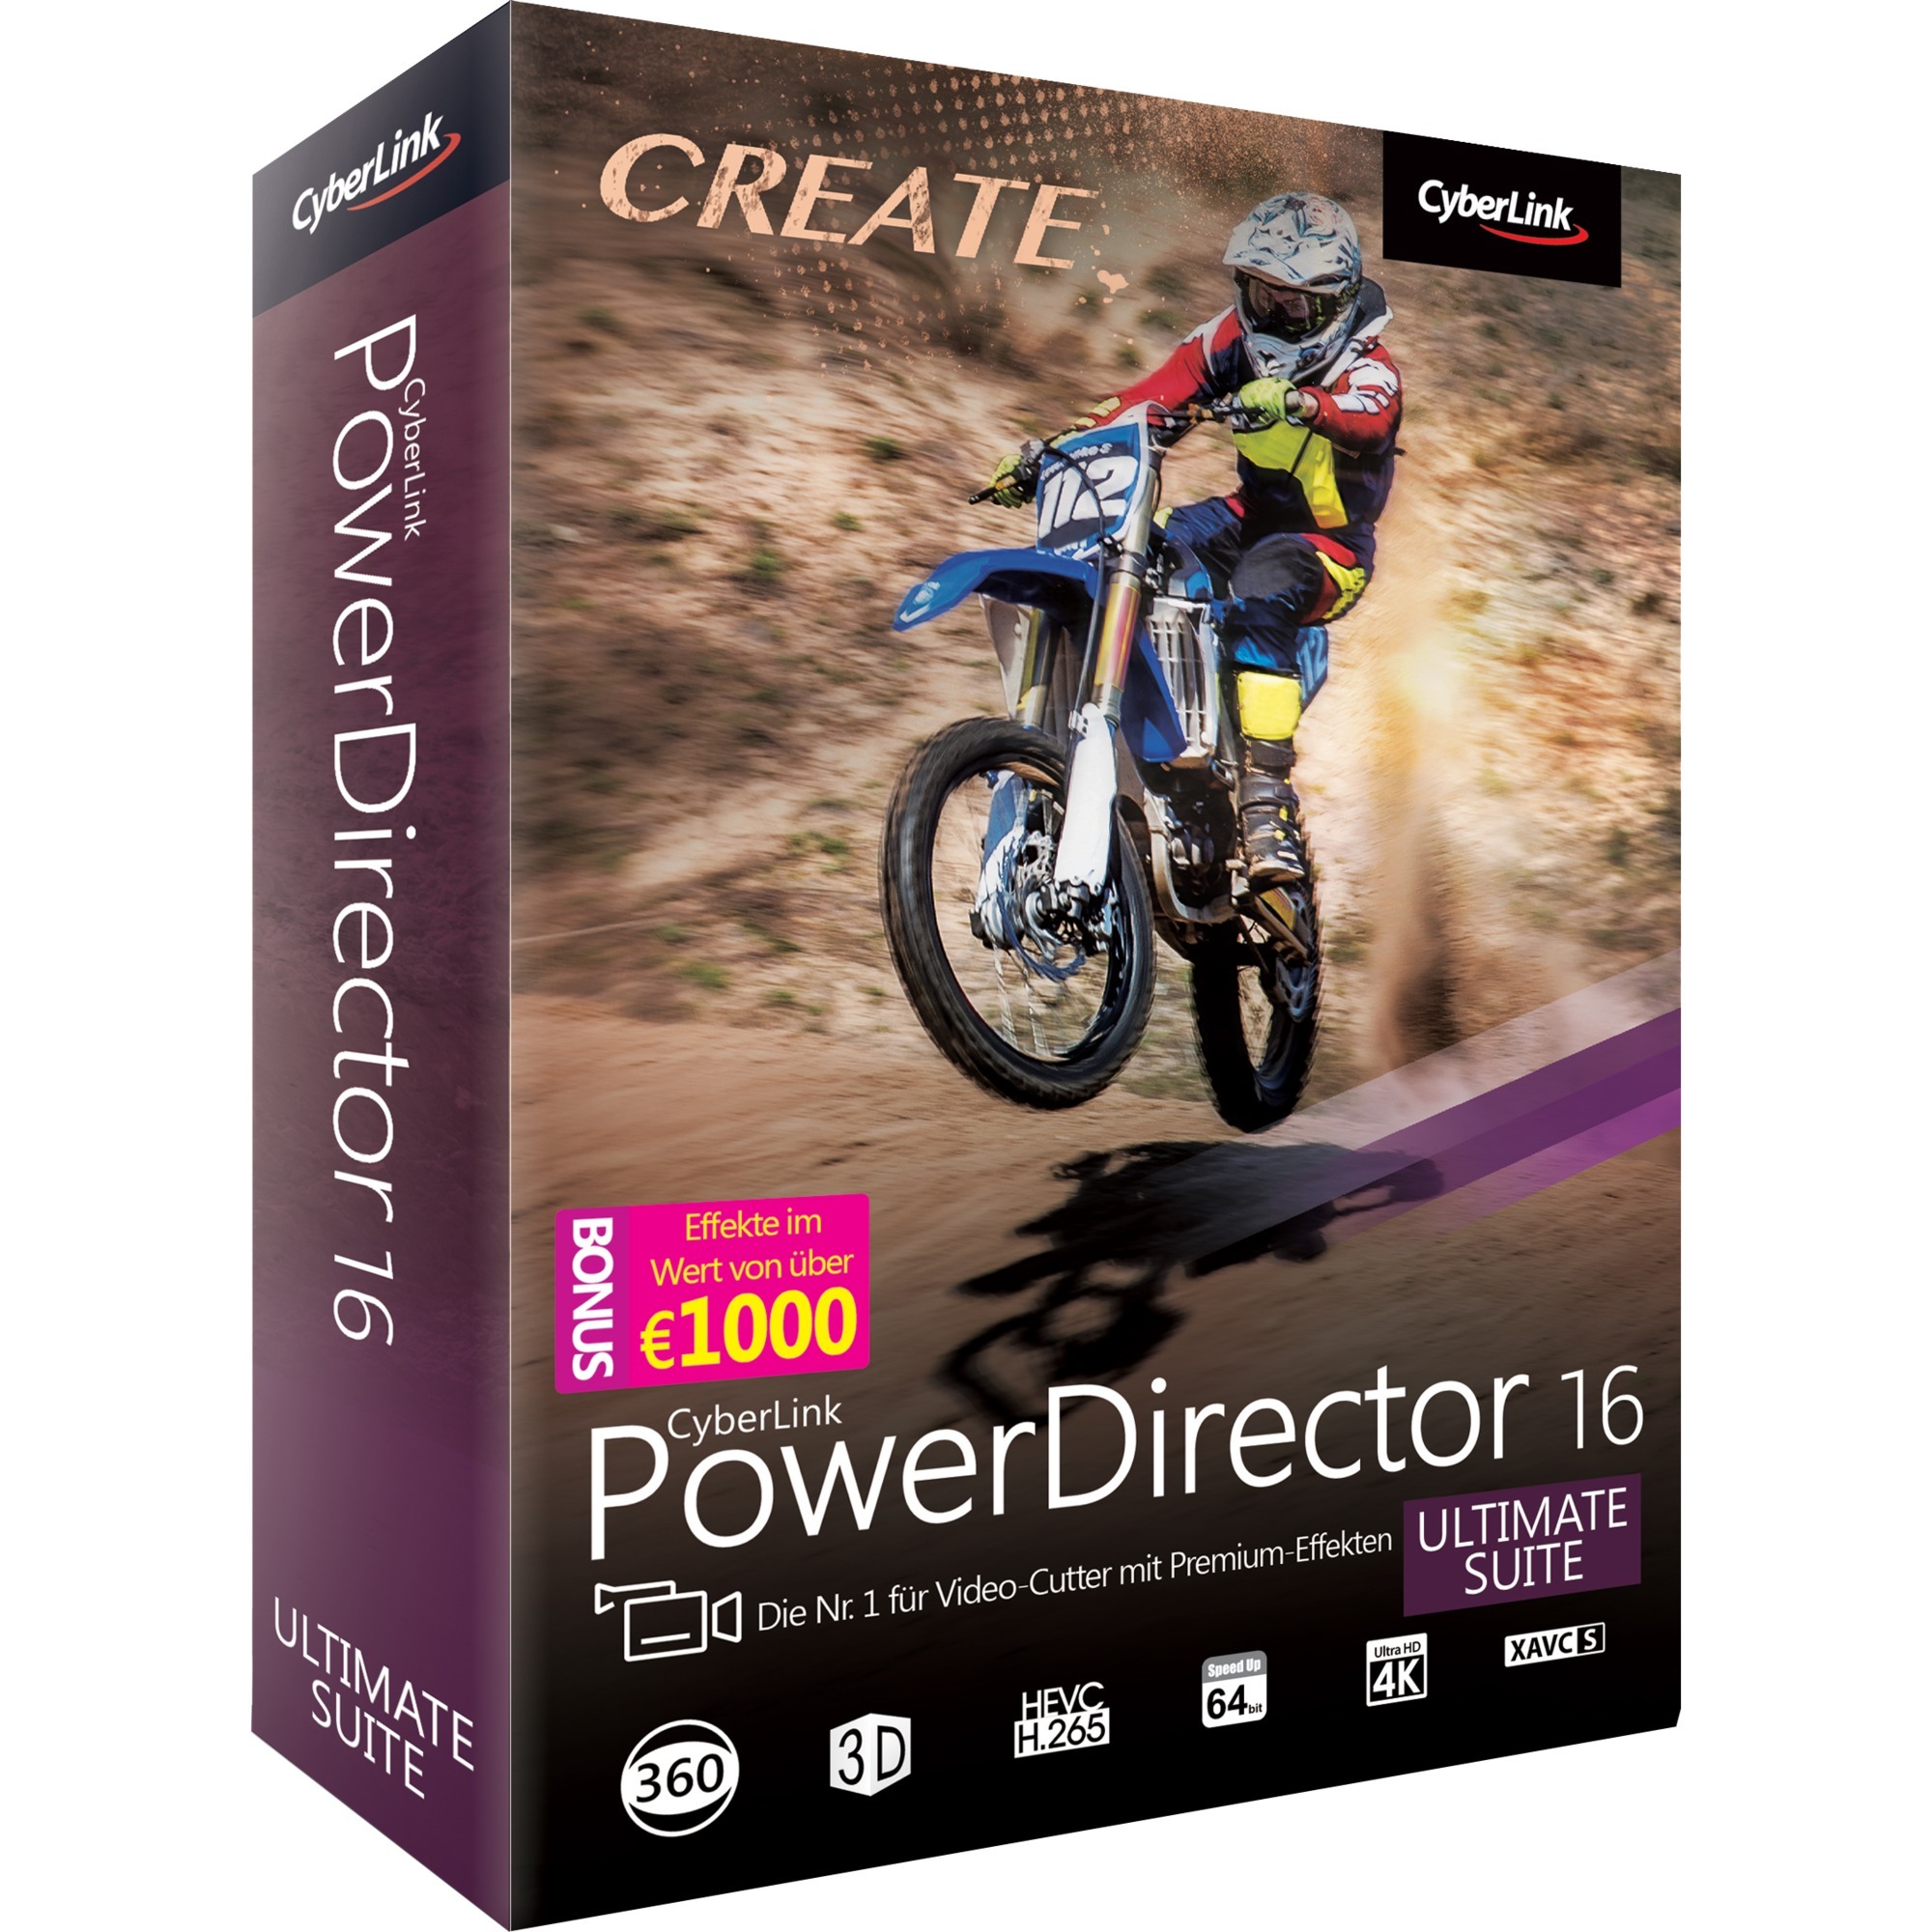 PowerDirector 16 Ultimate Suite